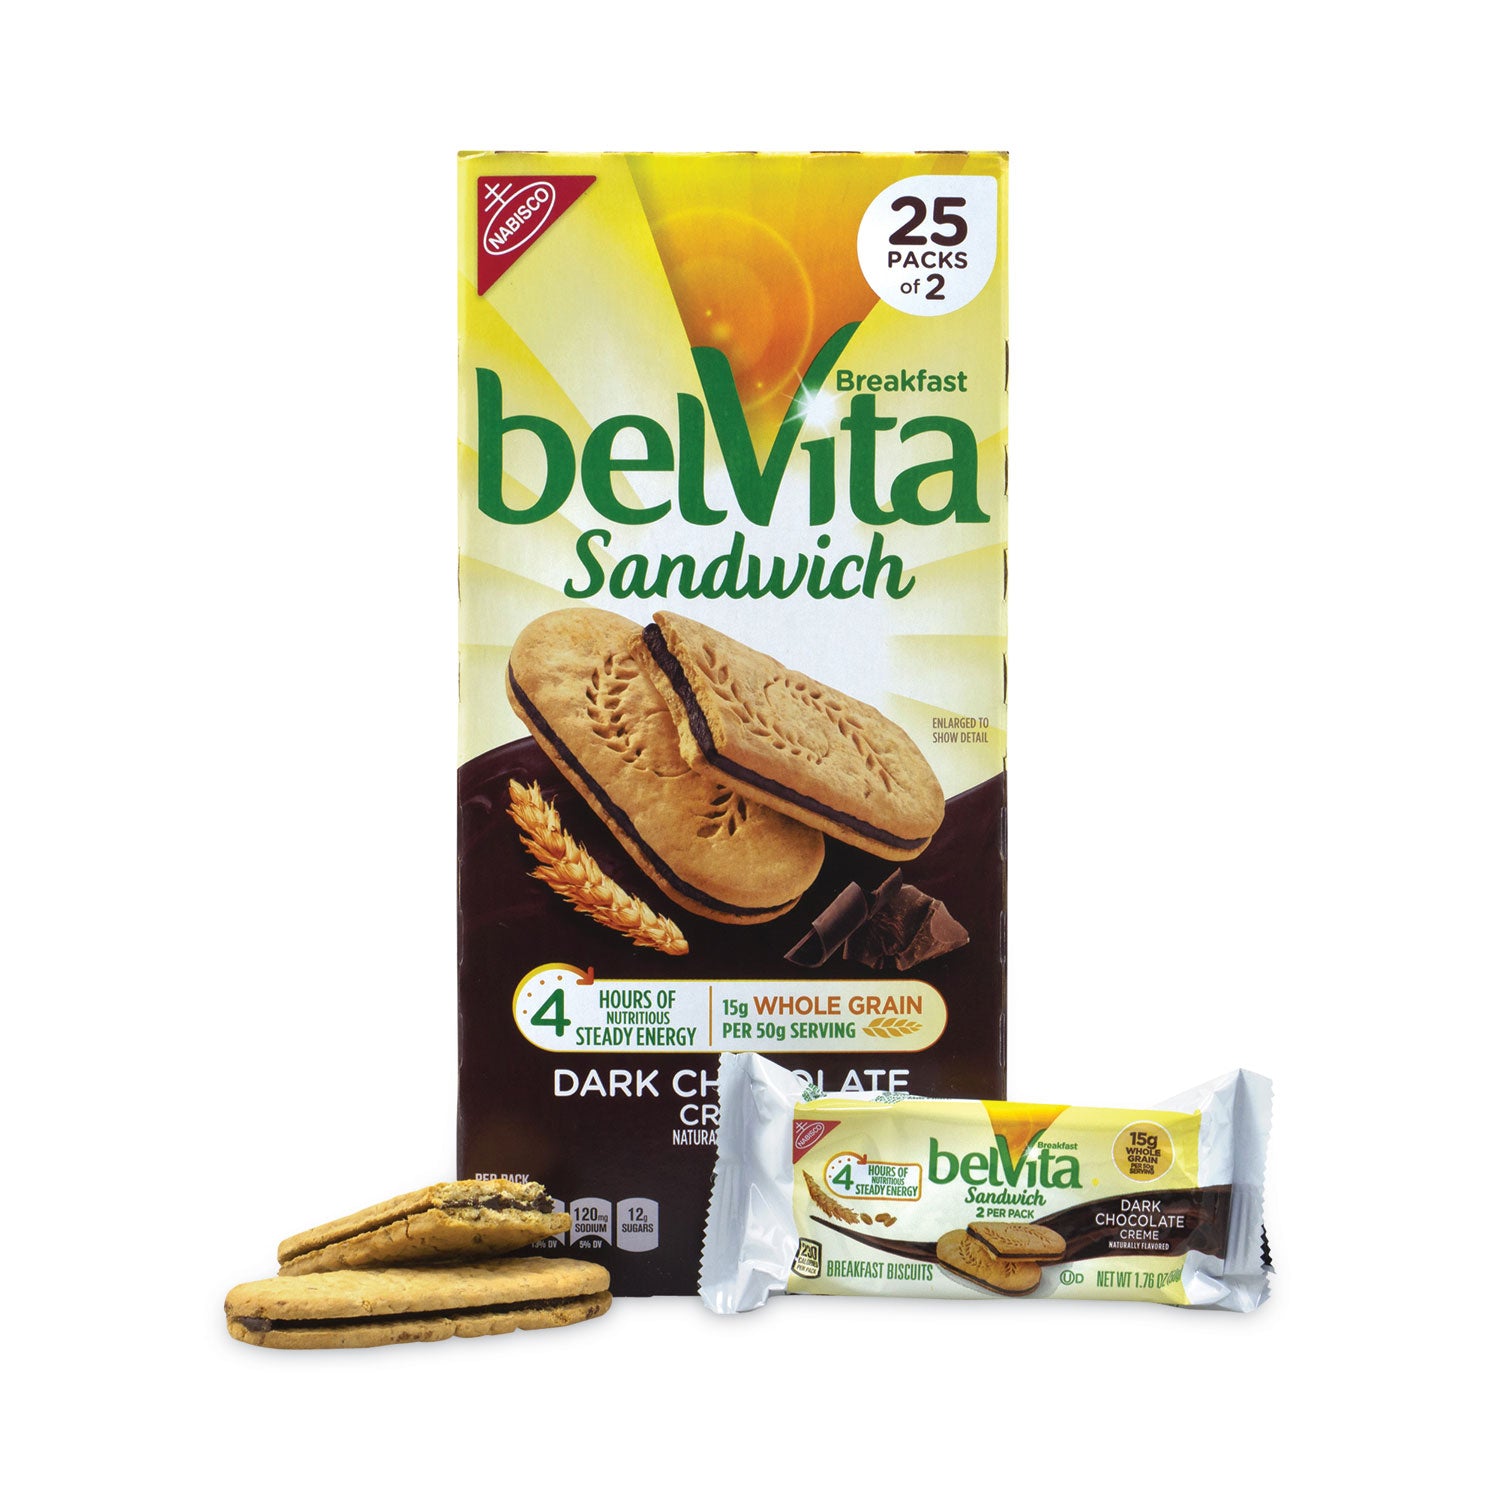 belvita-breakfast-biscuits-dark-chocolate-creme-breakfast-sandwich-176-oz-pack-25-pk-carton-ships-in-1-3-business-days_grr22000570 - 2